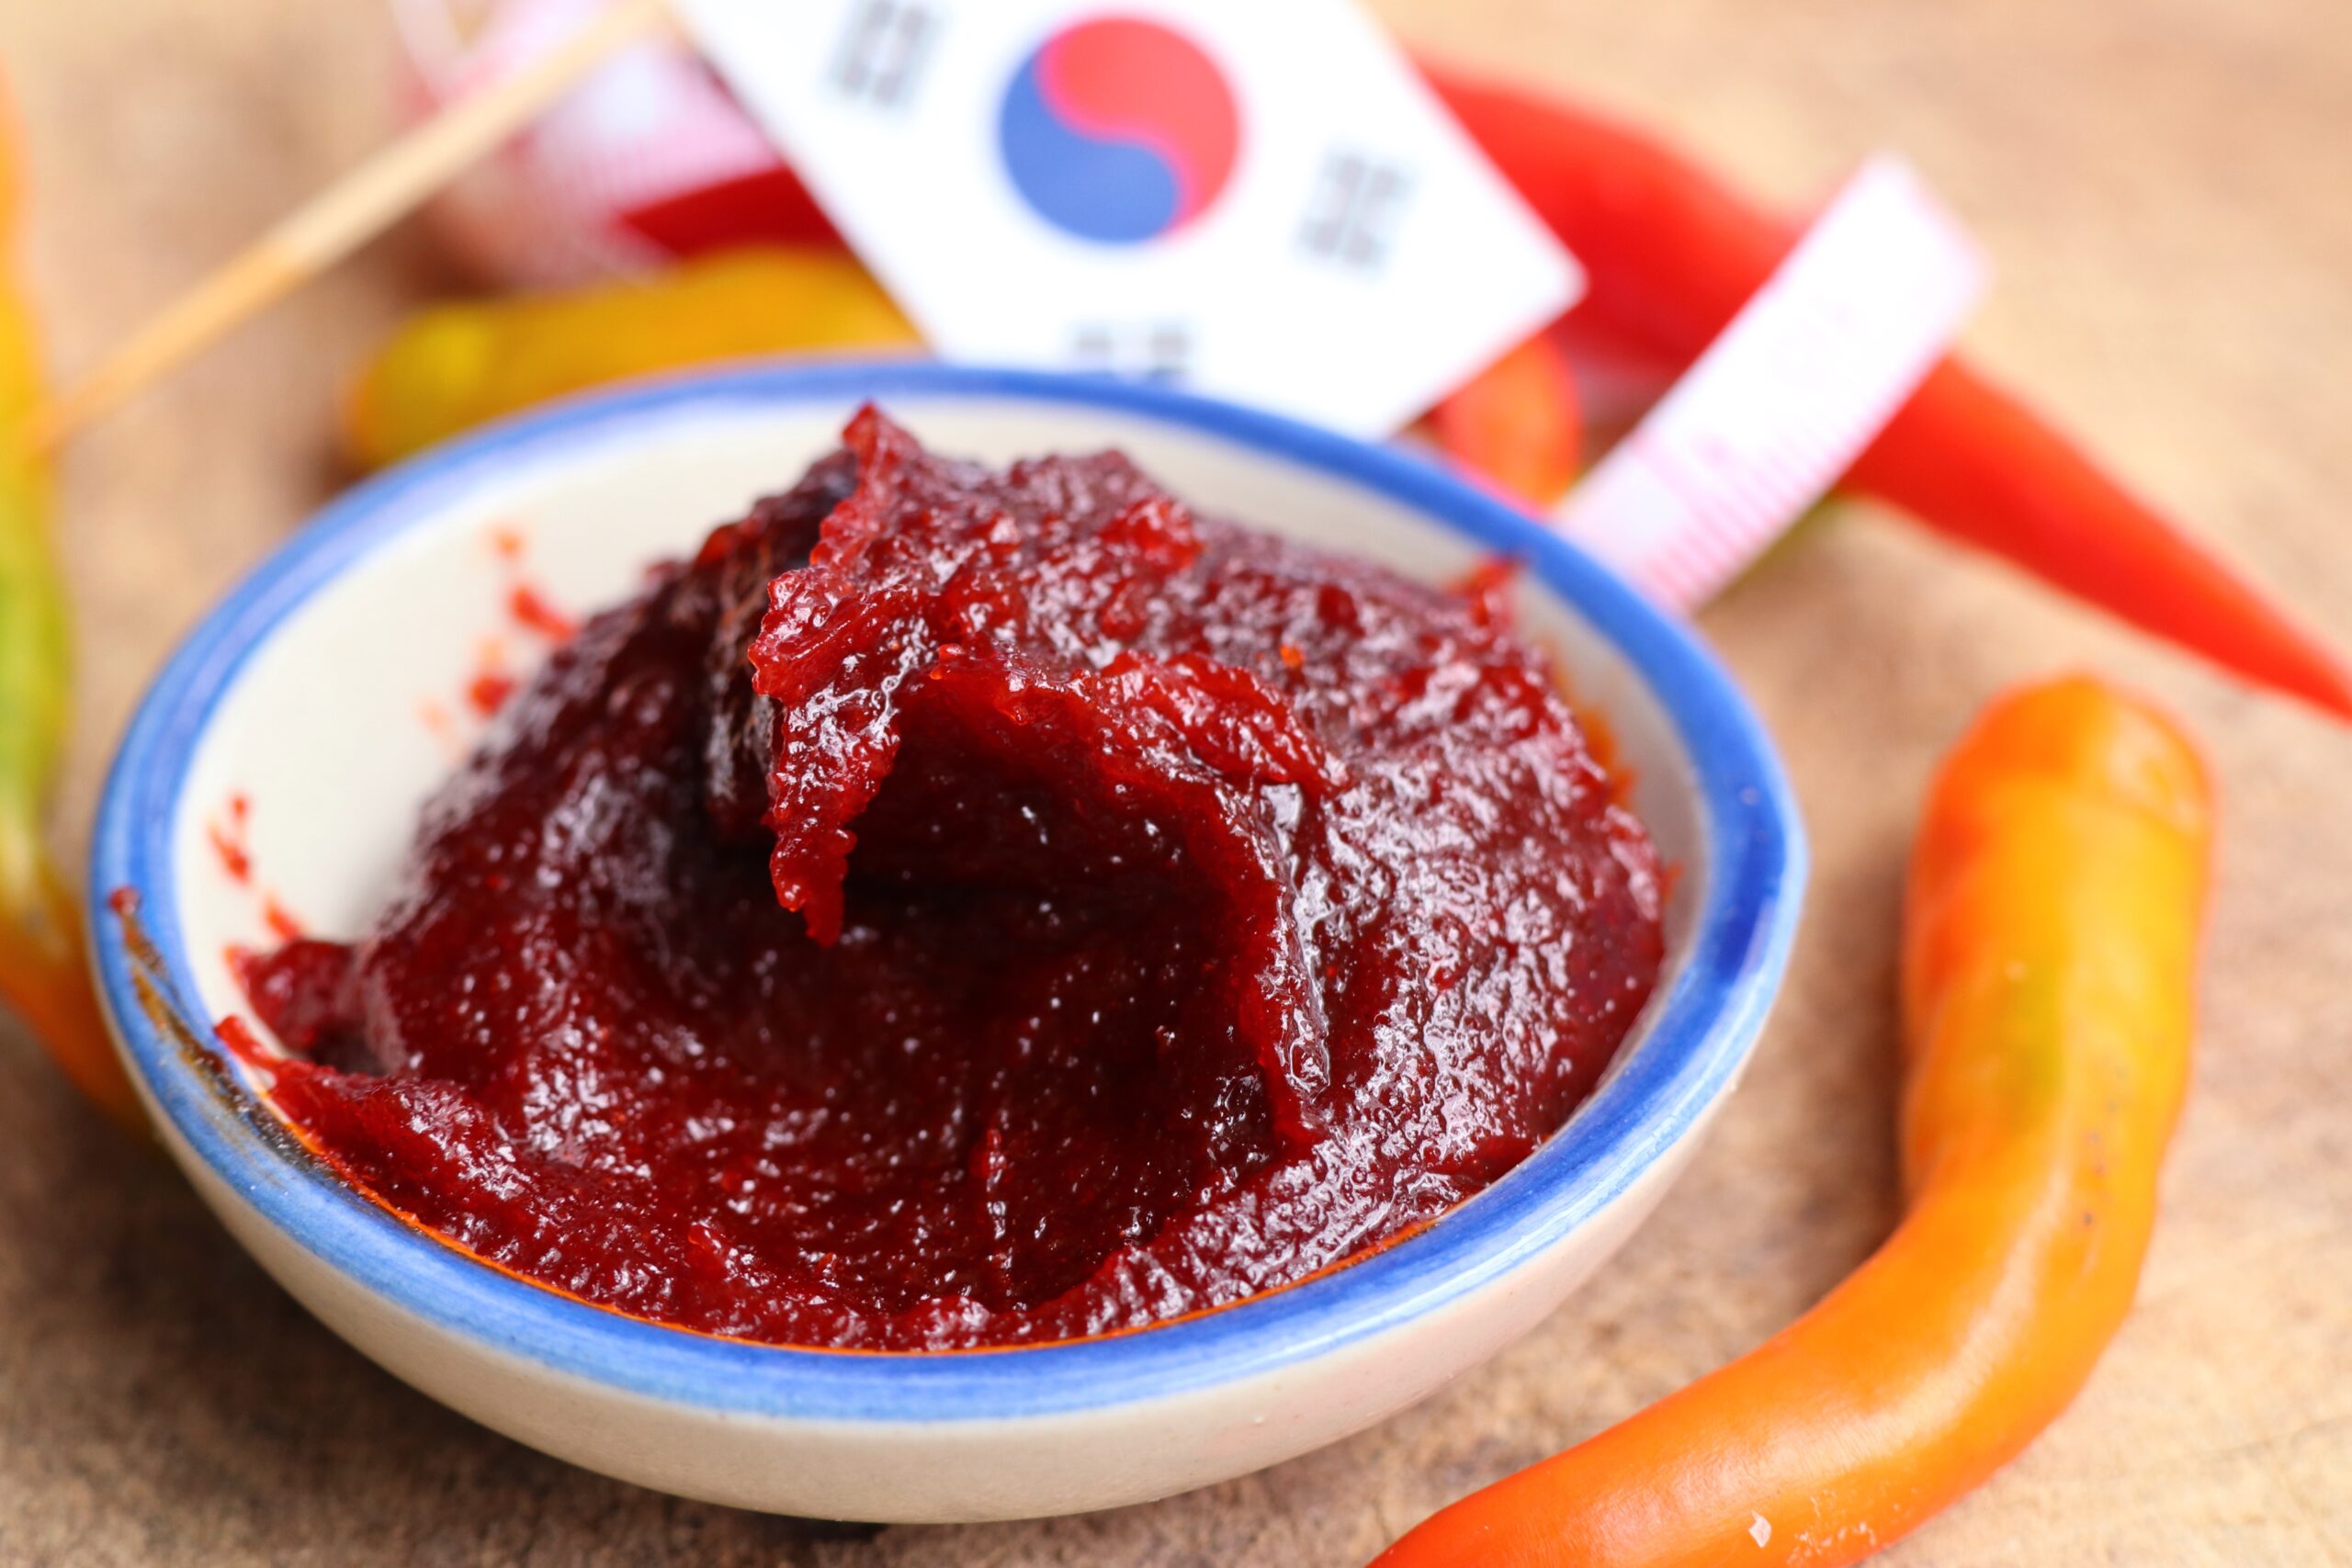 Korean Chili Paste Substitutes